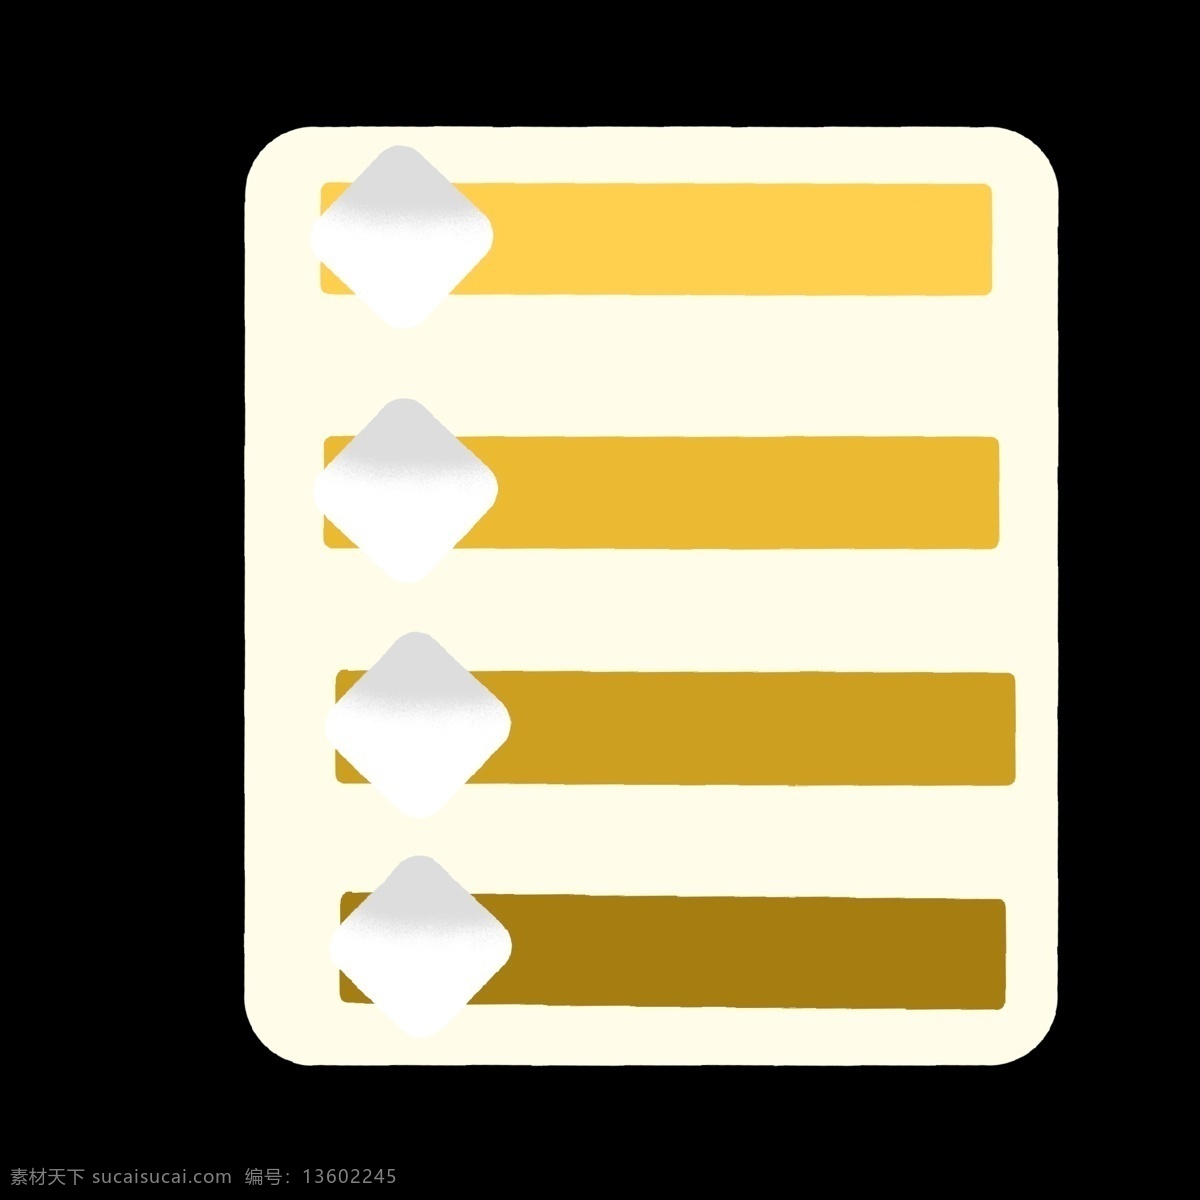 黄色 渐变 分类 图标 分开 简洁 简约 简单 卡通 ppt专用 分别介绍模板 色块 几何形体